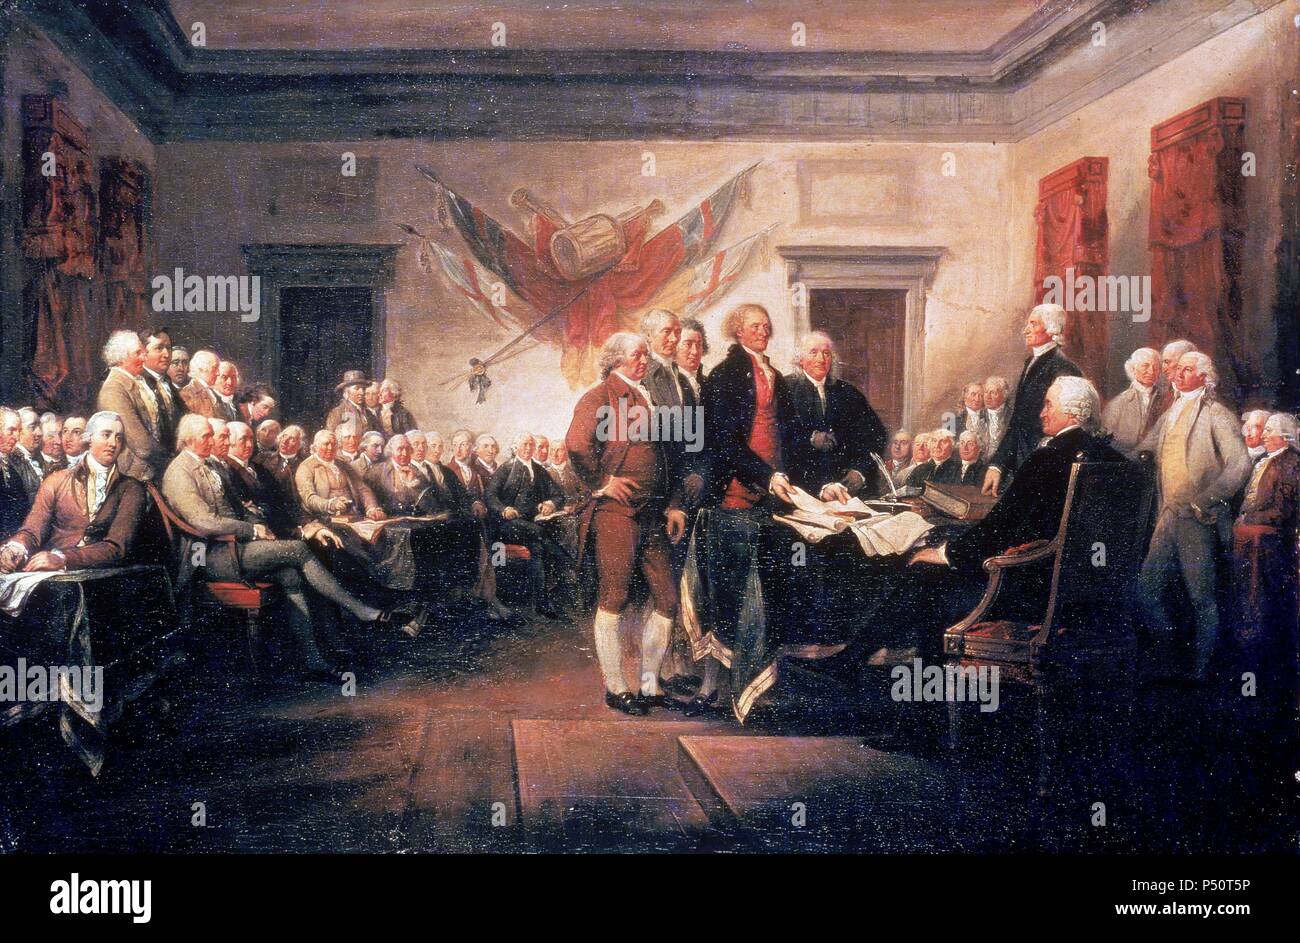 DECLARACION DE INDEPENDENCIA NORTEAMERICANA (4 de julio de 1776). Oleo de John TRUMBULL. Art Gallery (Universidad de Yale). Estados Unidos. Stock Photo